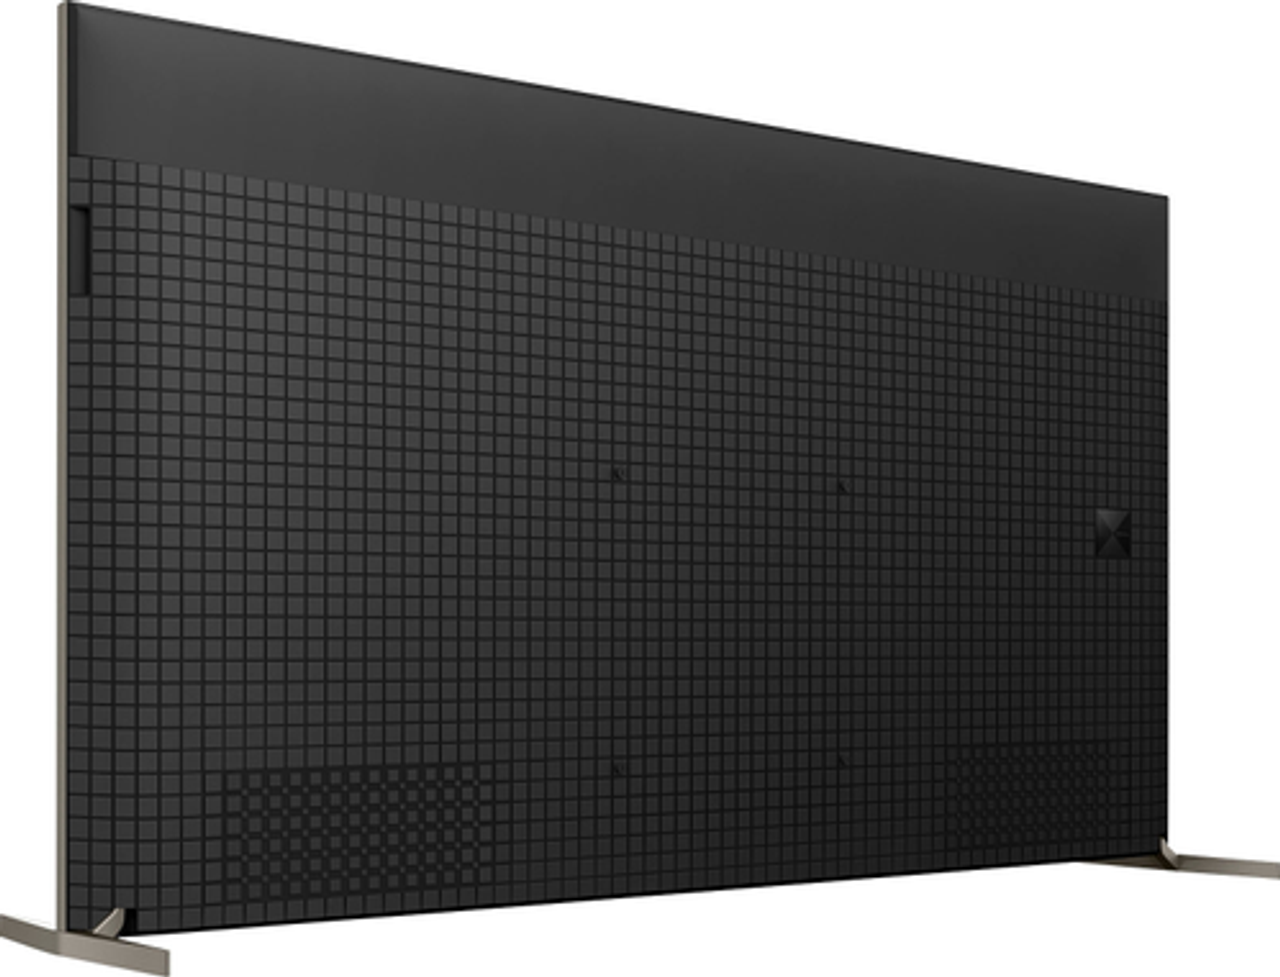 Sony - 65" class BRAVIA XR X93L Mini LED 4K HDR Google TV